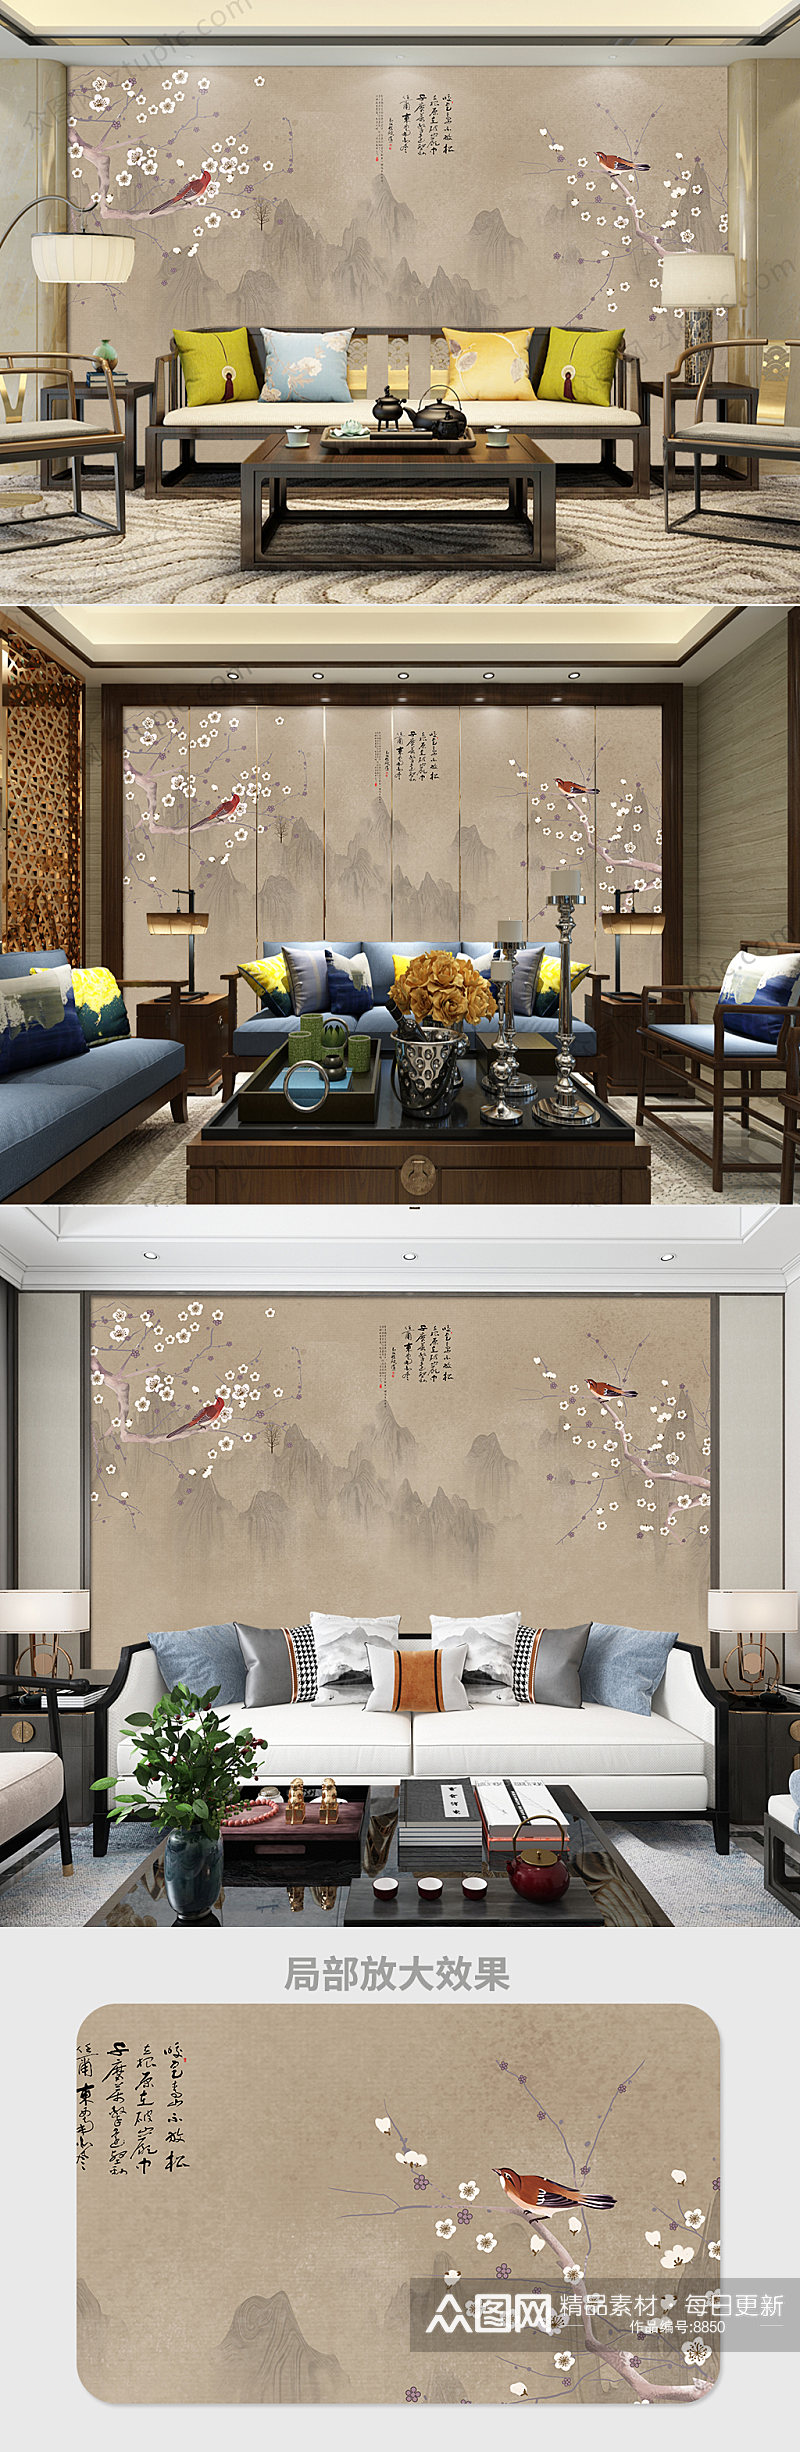 原创新中式工笔花鸟背景墙装饰画素材